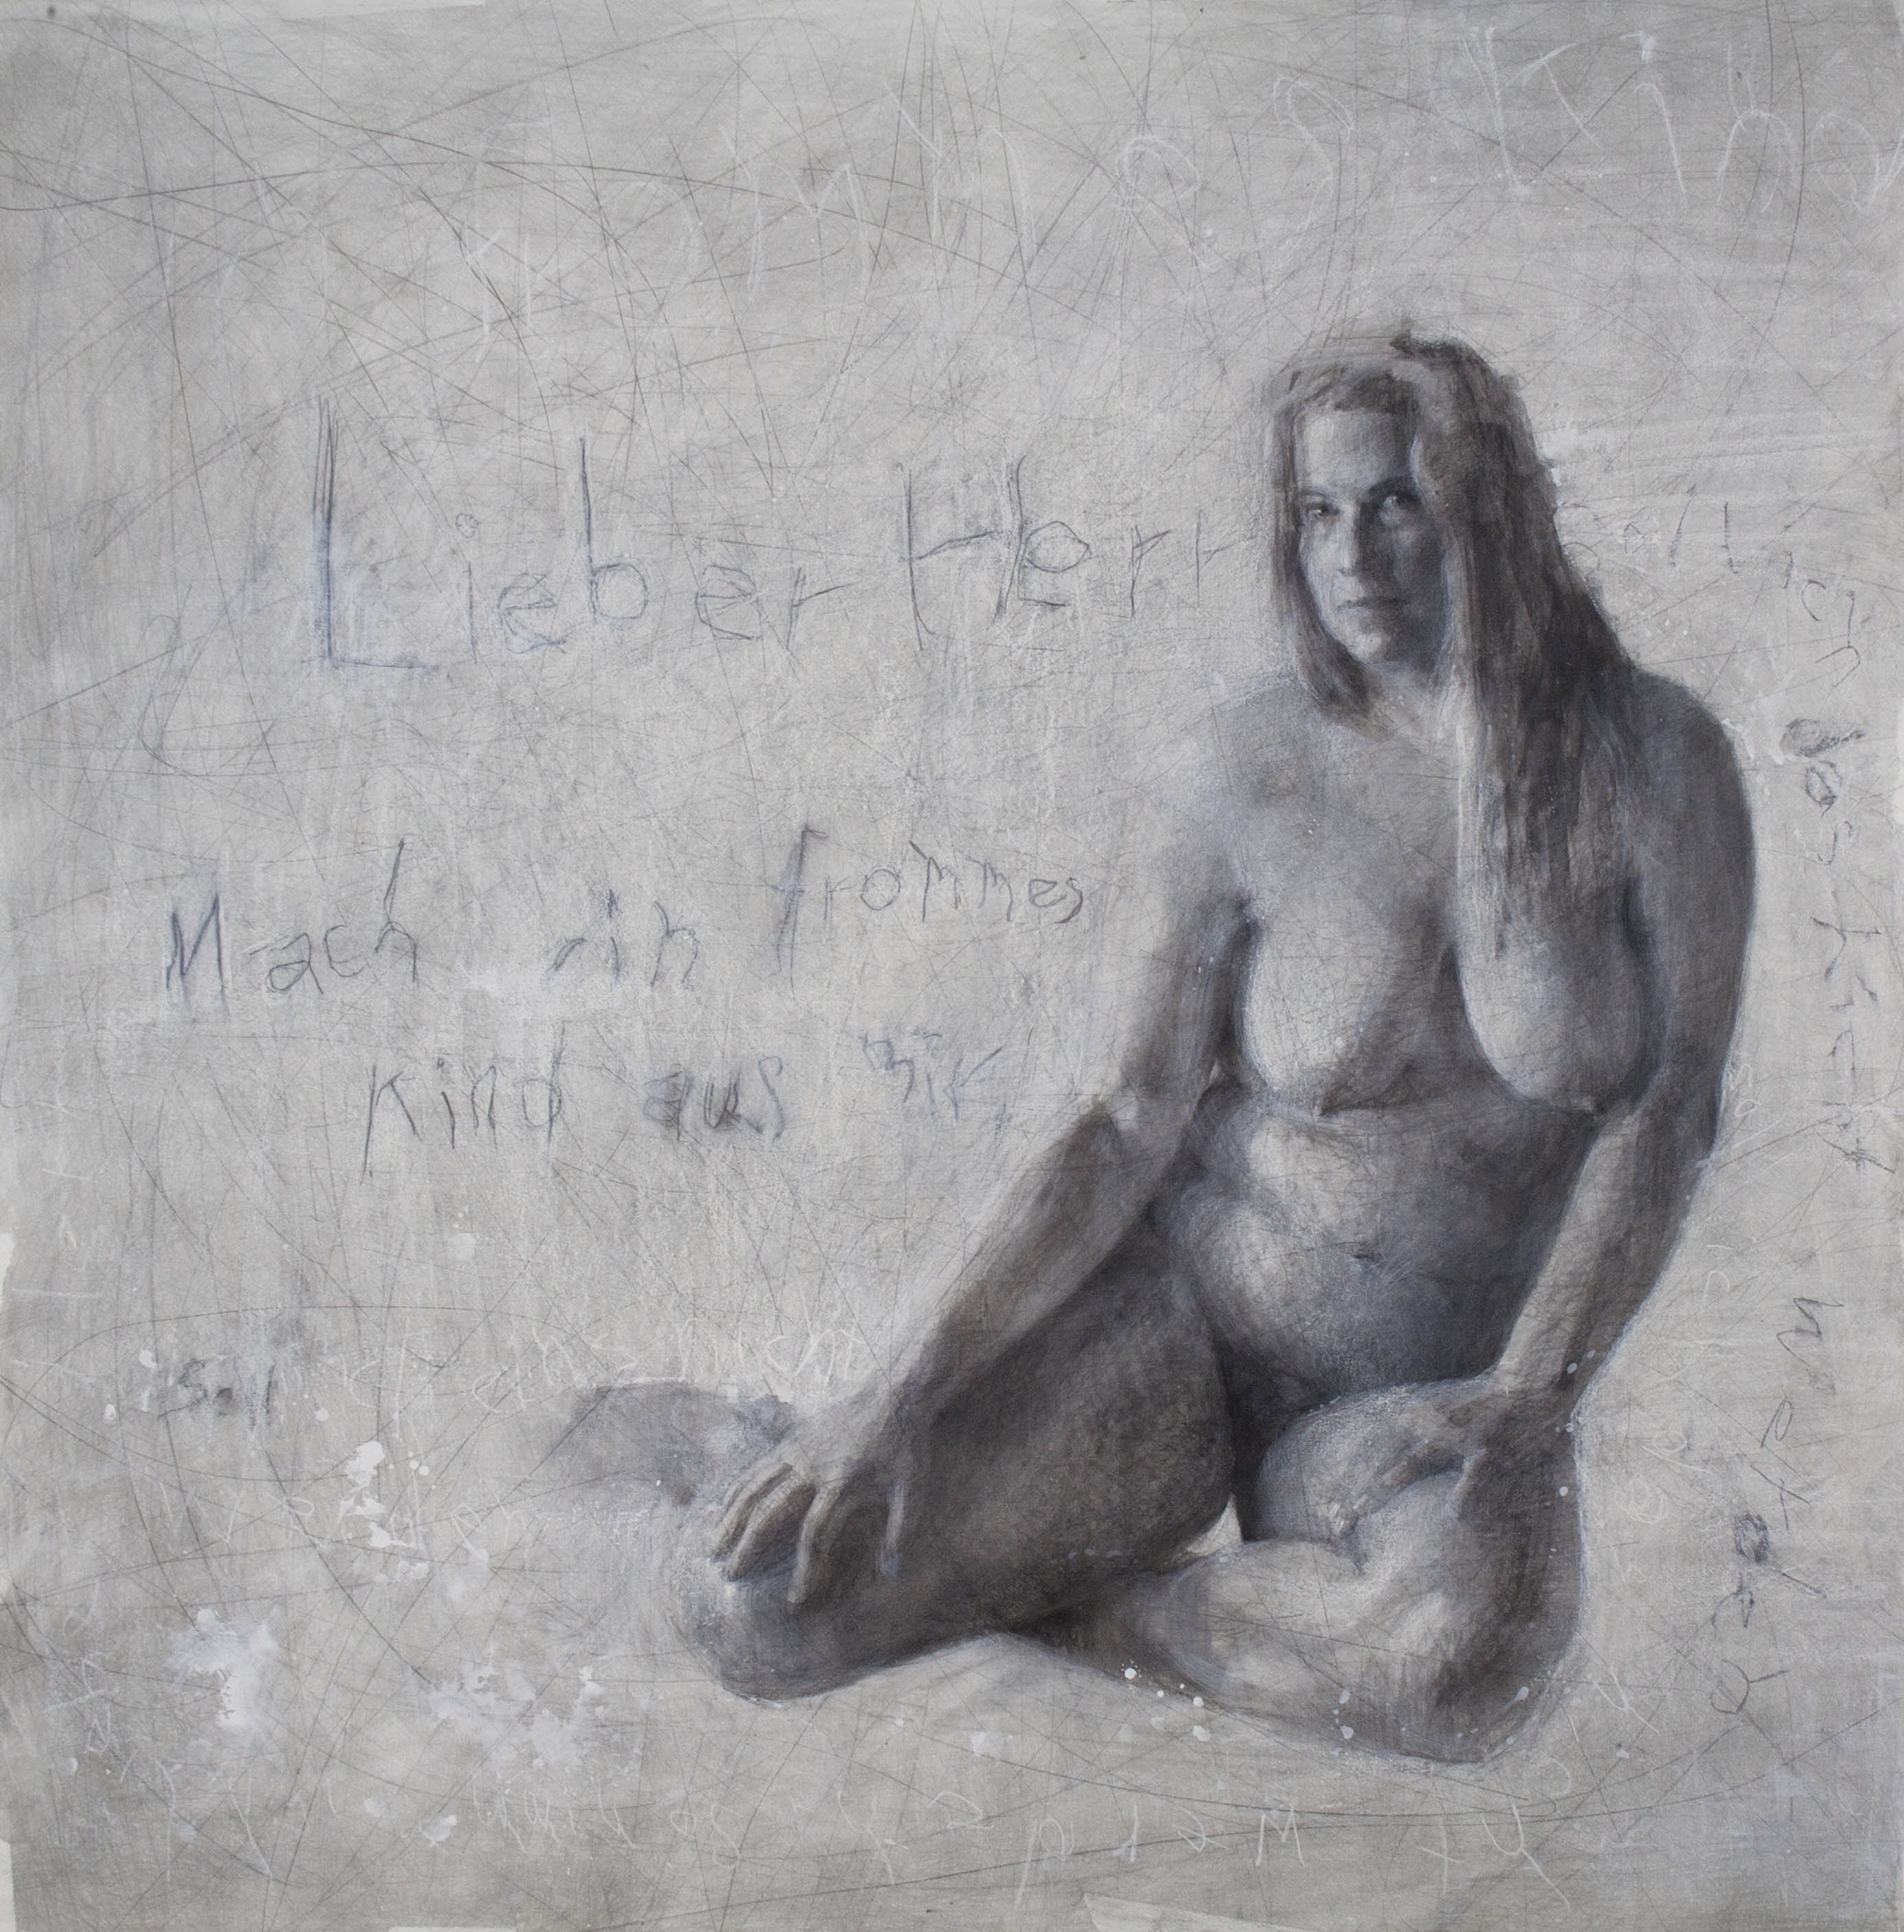 Menschen wachen, 2014, Kağıt üzerine karakalem ve karışık teknik- charcoal and mixed media on paper, 152×158 cm